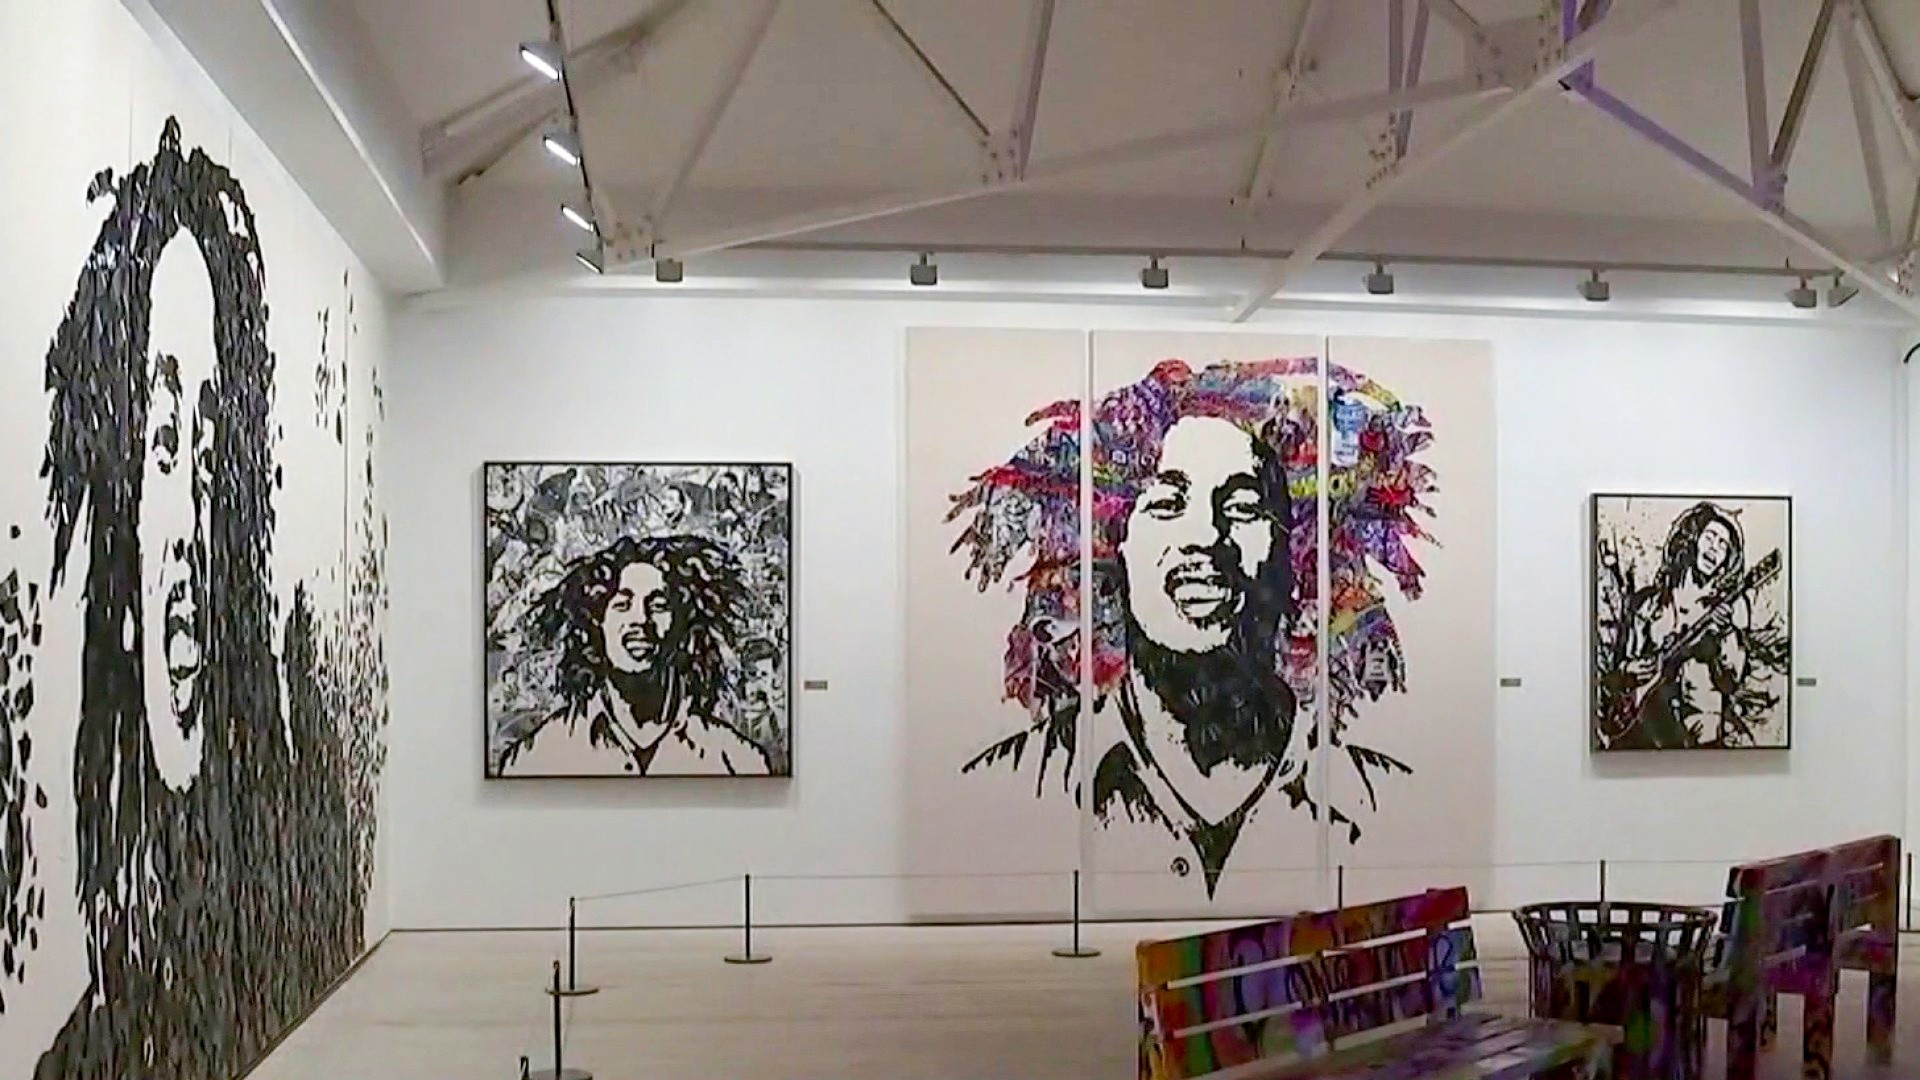 Celebran 77 años del natalicio de Bob Marley con exposición en la Galería Saatchi de Londres